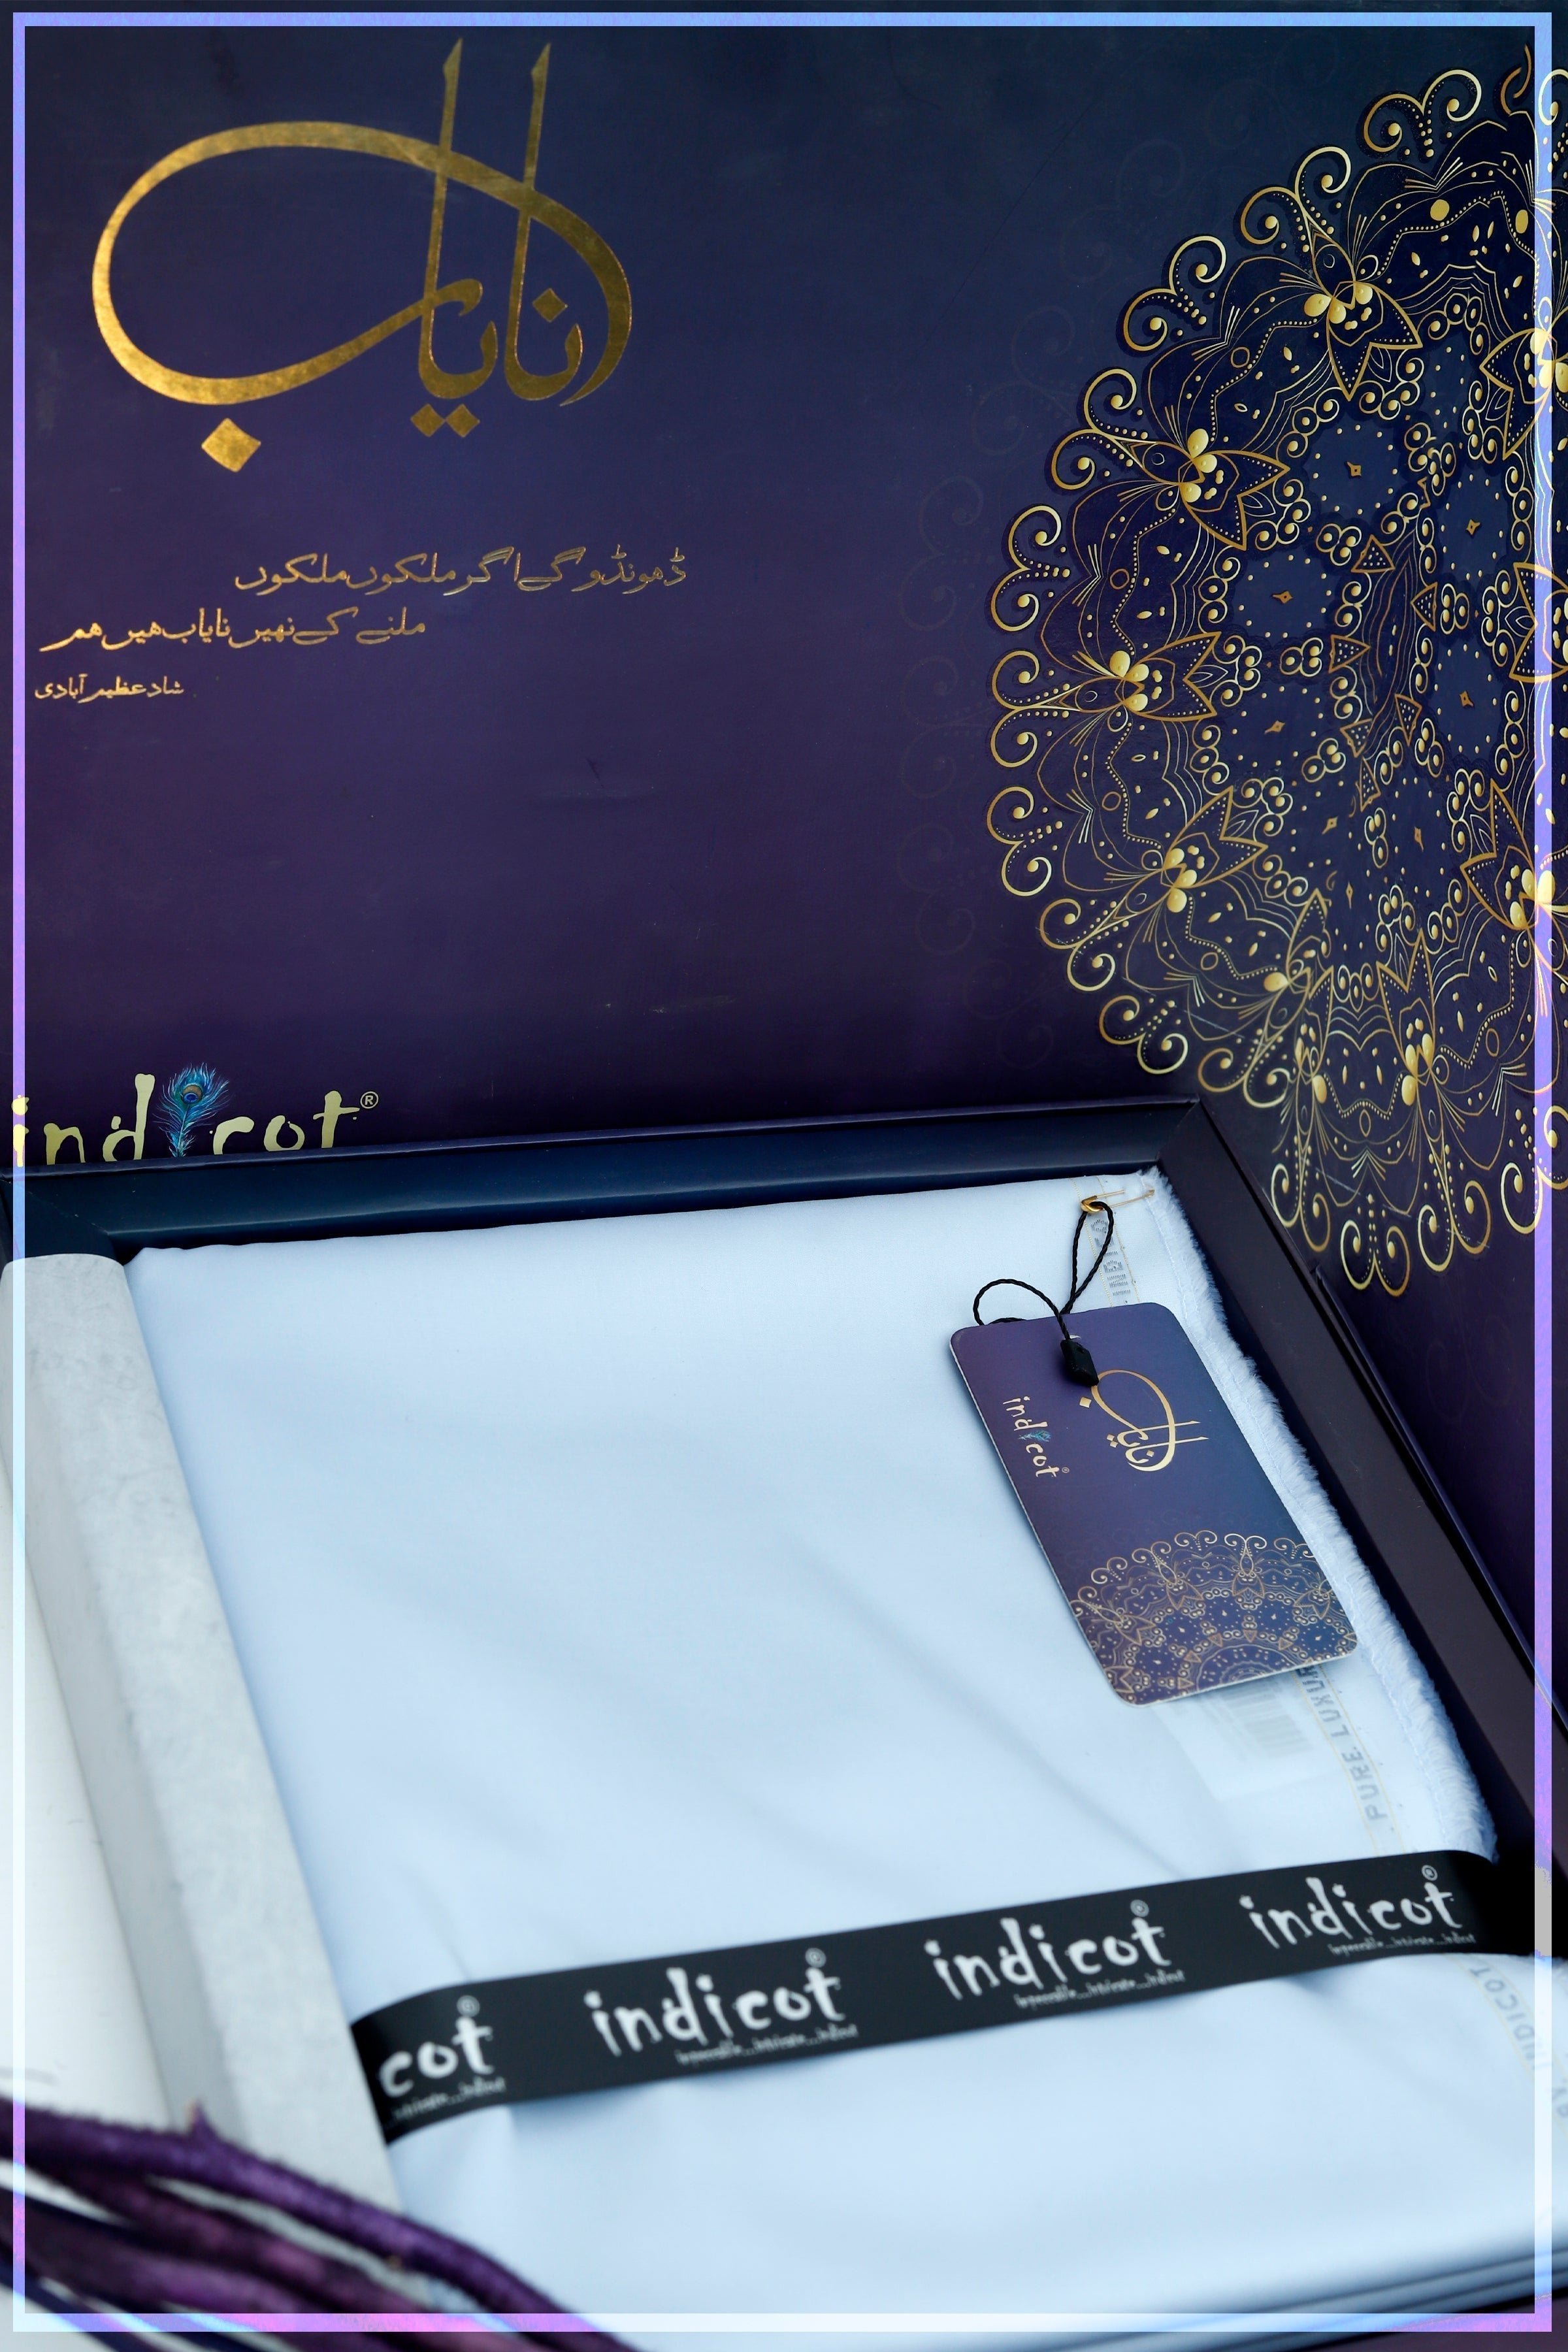 Indicot Nayaab Shade#517 (MS BLue) available at Saleem Fabrics Traditions